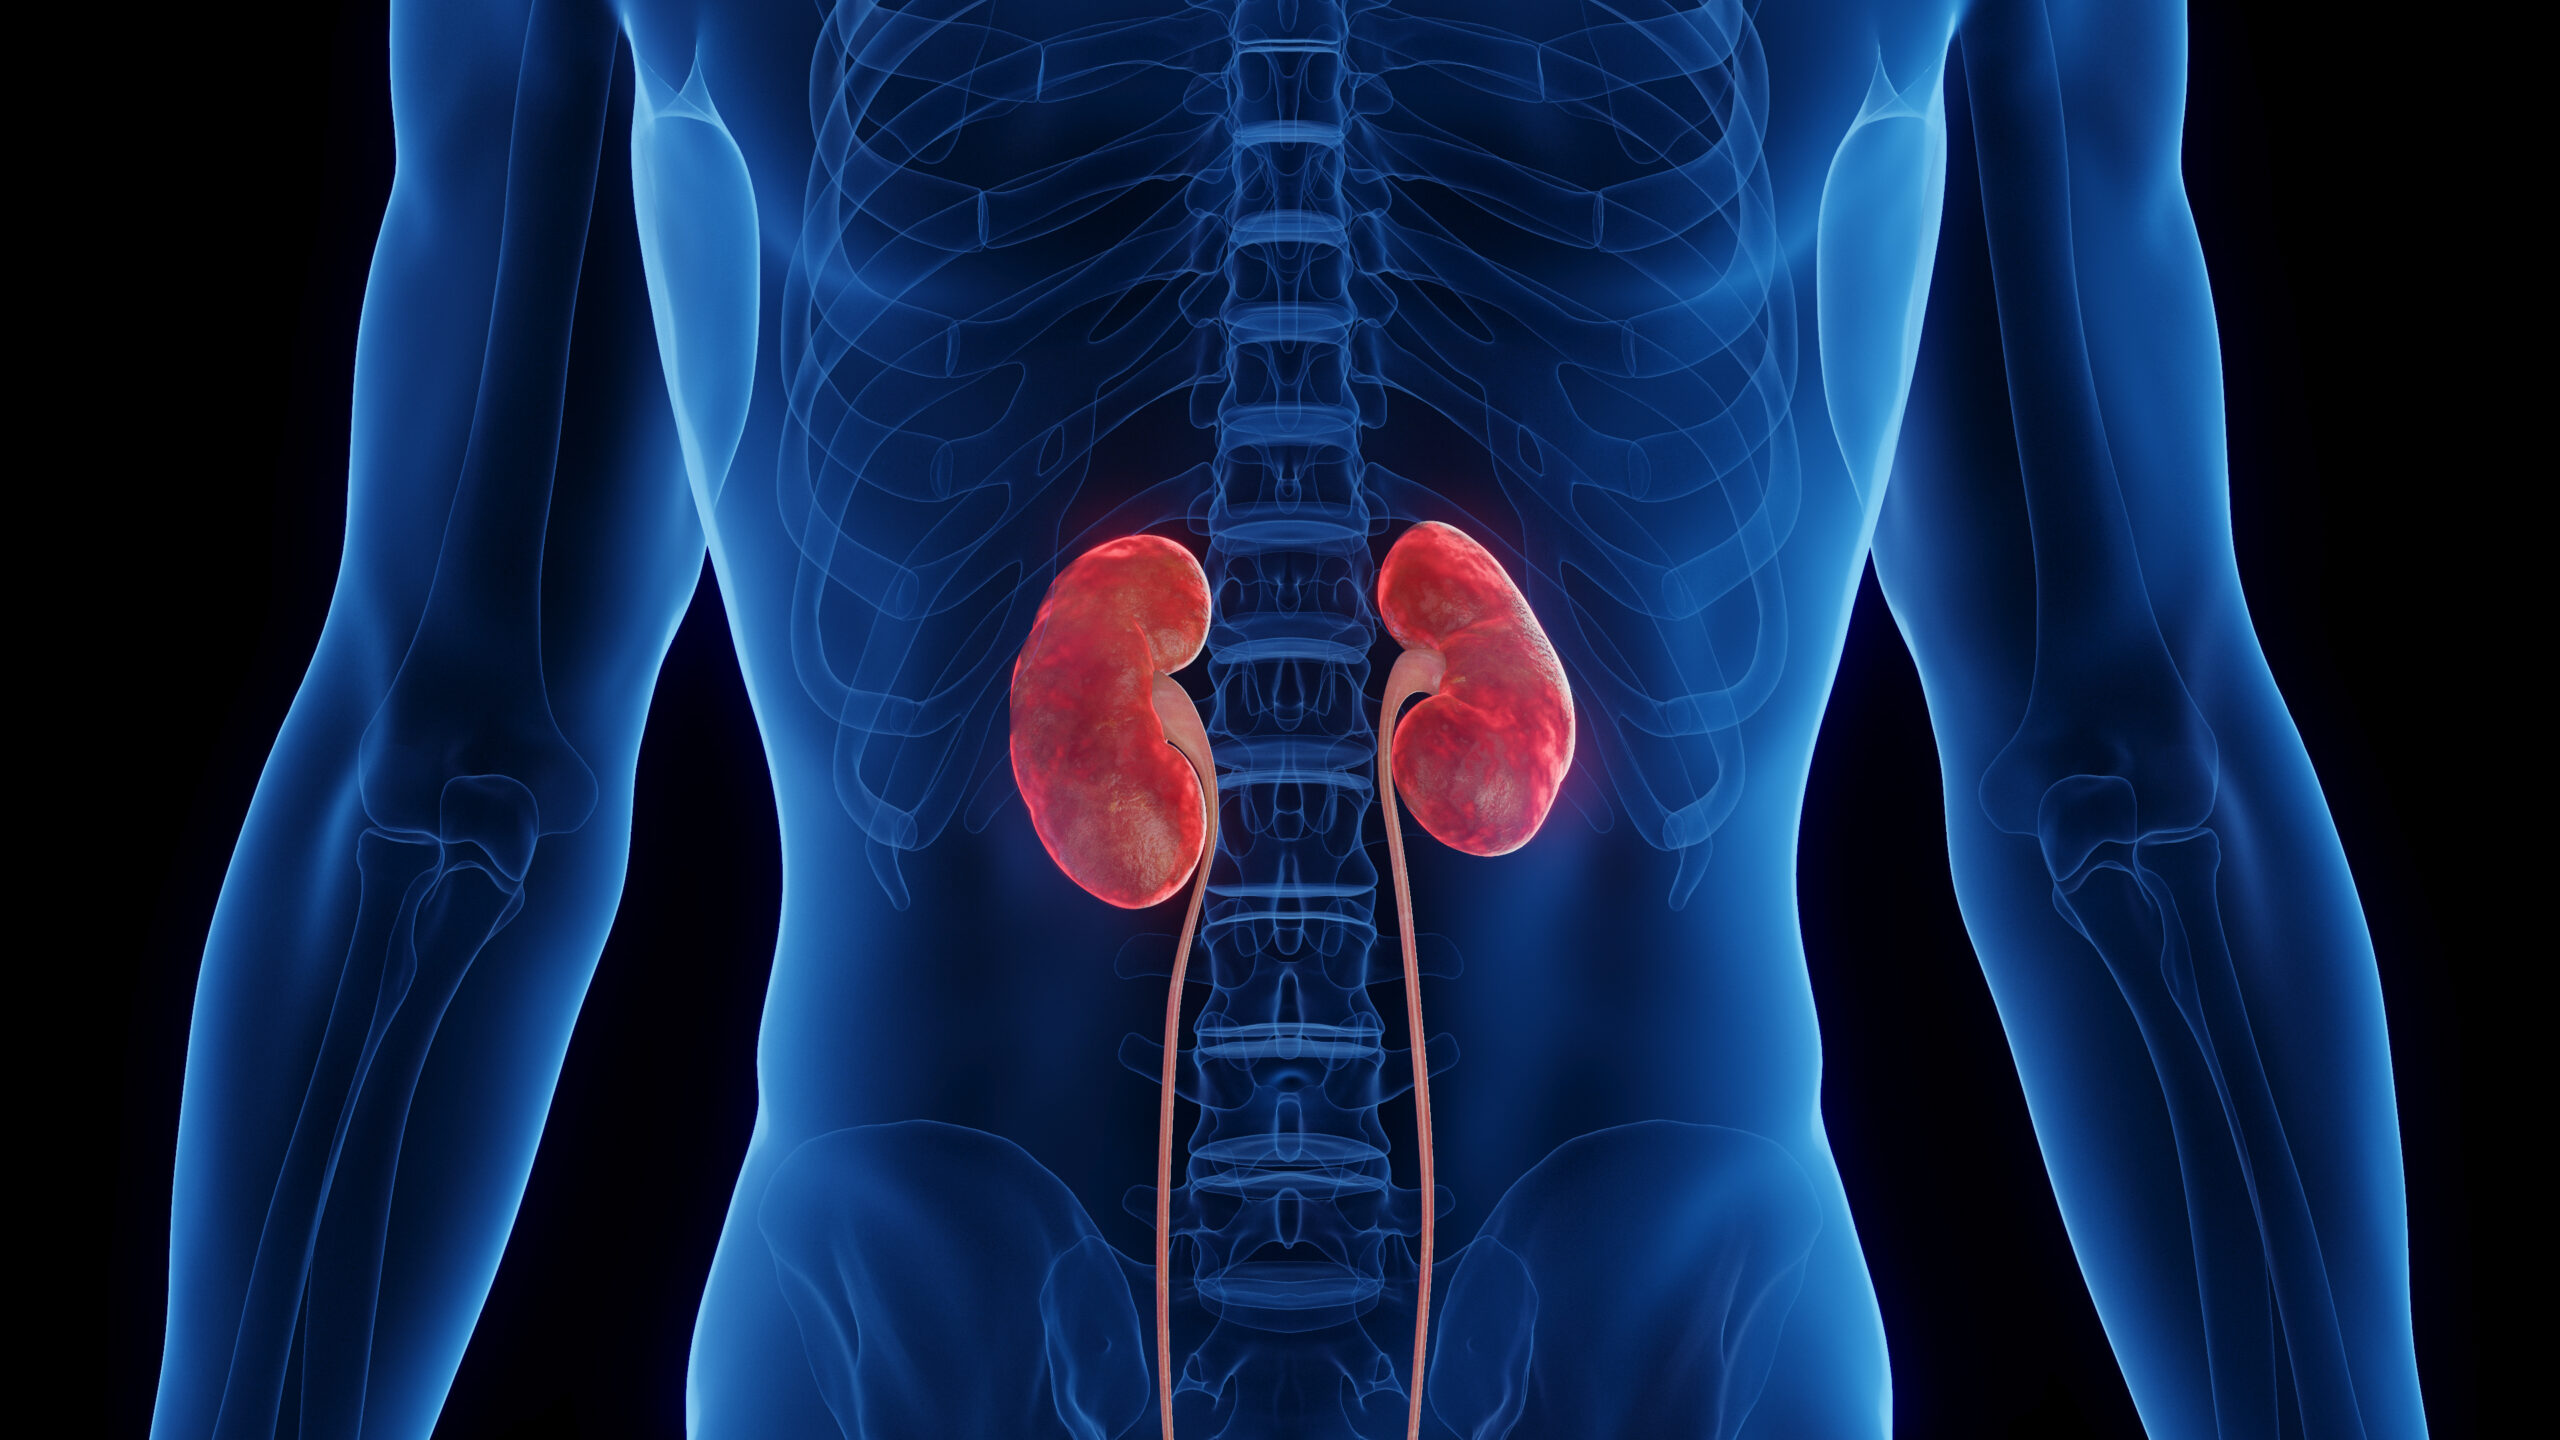 3D medical illustration of a man’s inflamed kidneys